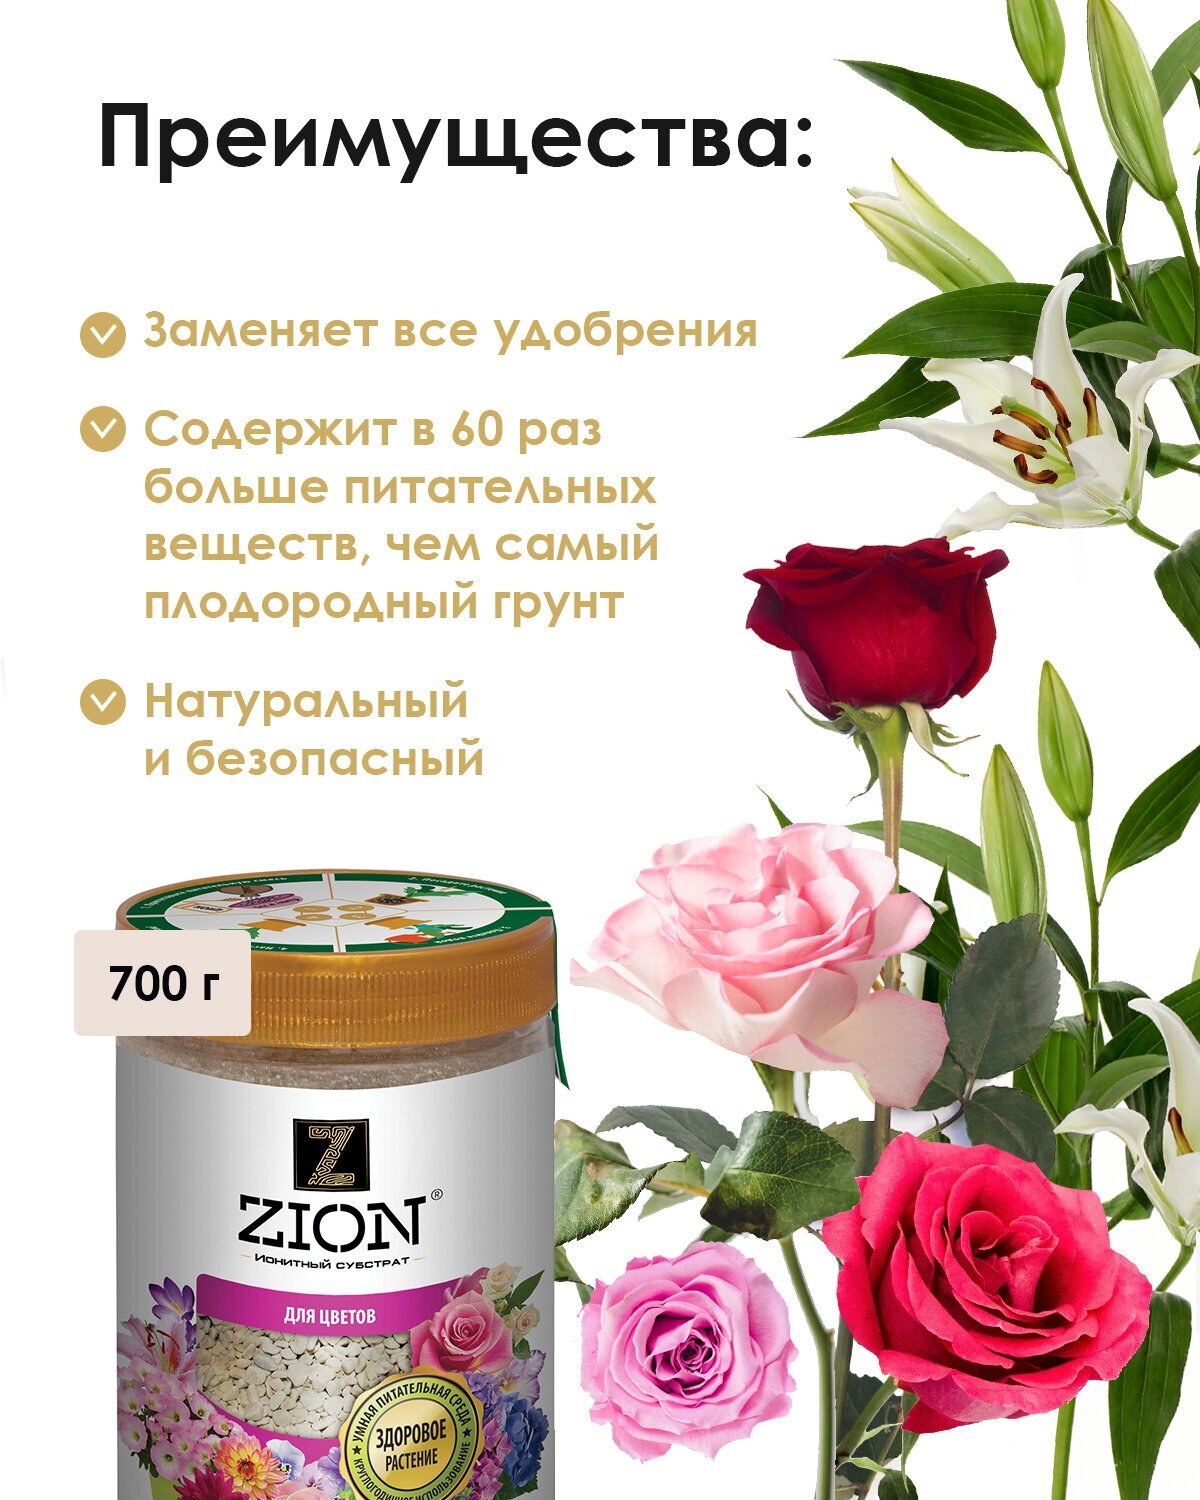 Ионитный субстрат для цветов Zion, 700 г - фото №2